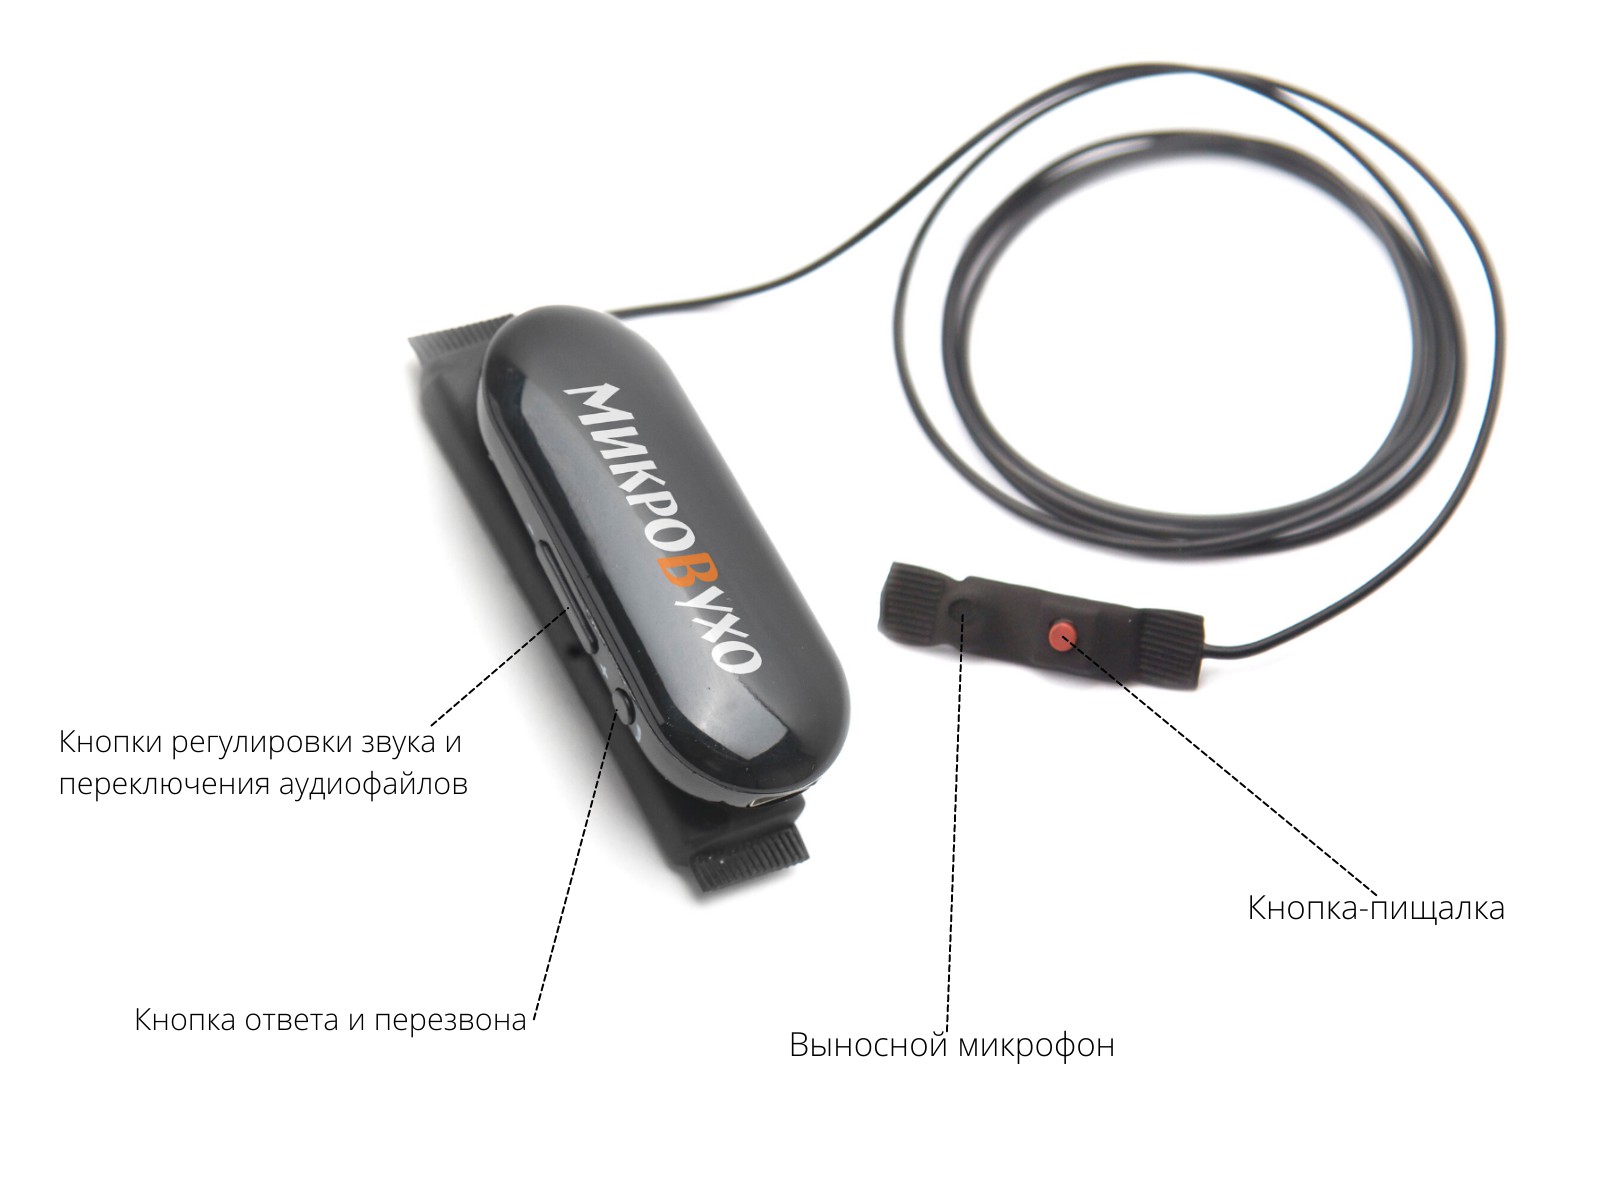 Гарнитура Bluetooth Box PRO Plus c капсульным микронаушником К5 4 мм - изображение 7